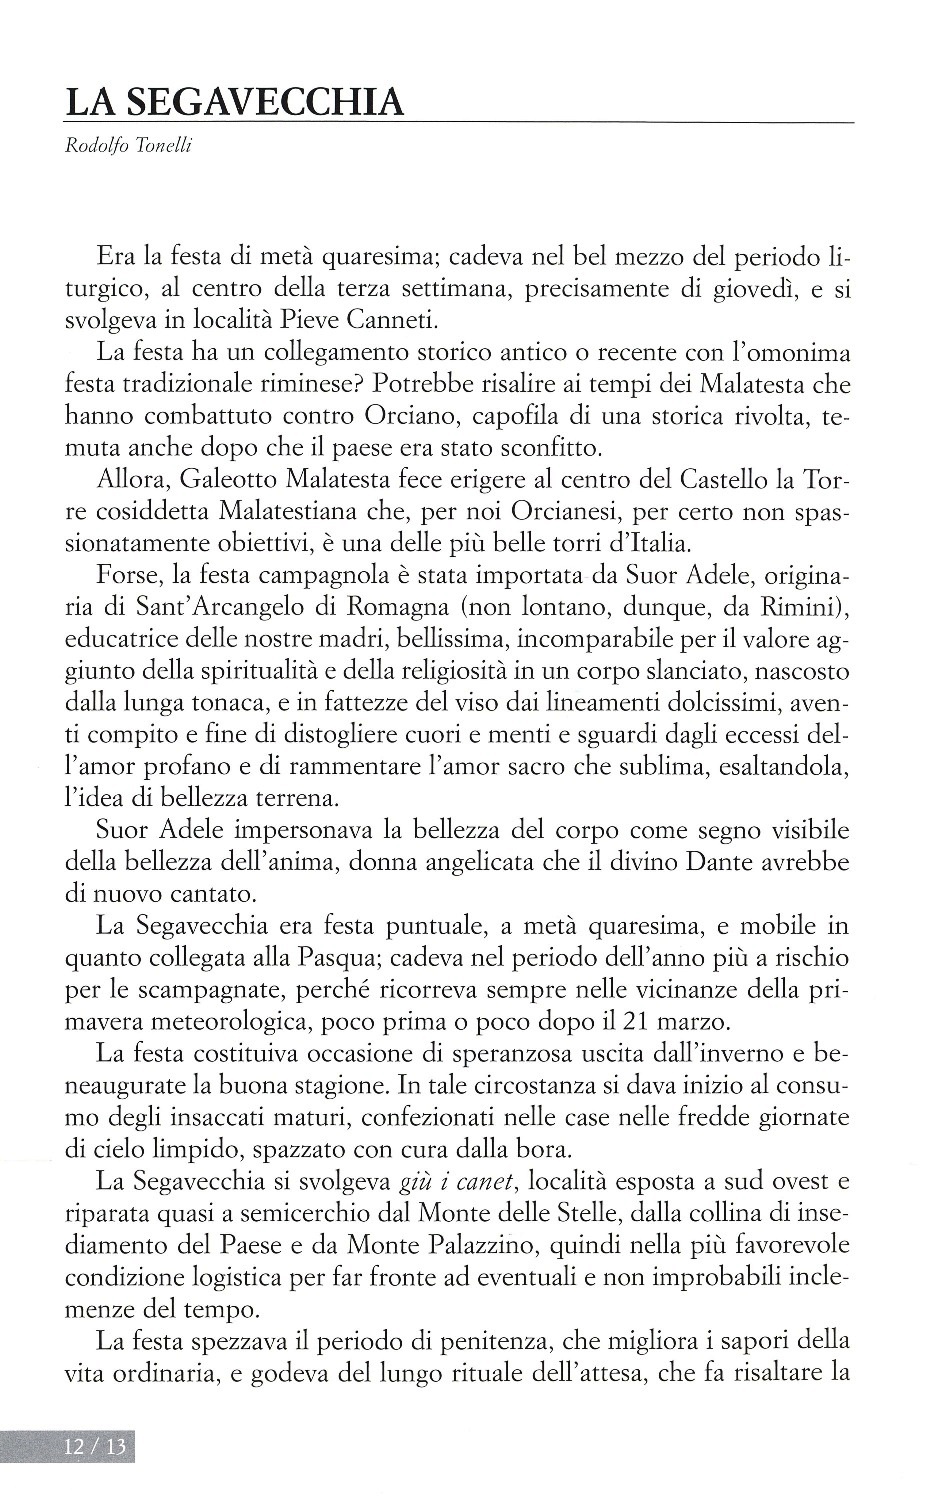 La torr i arduna tutti 2009 p.012